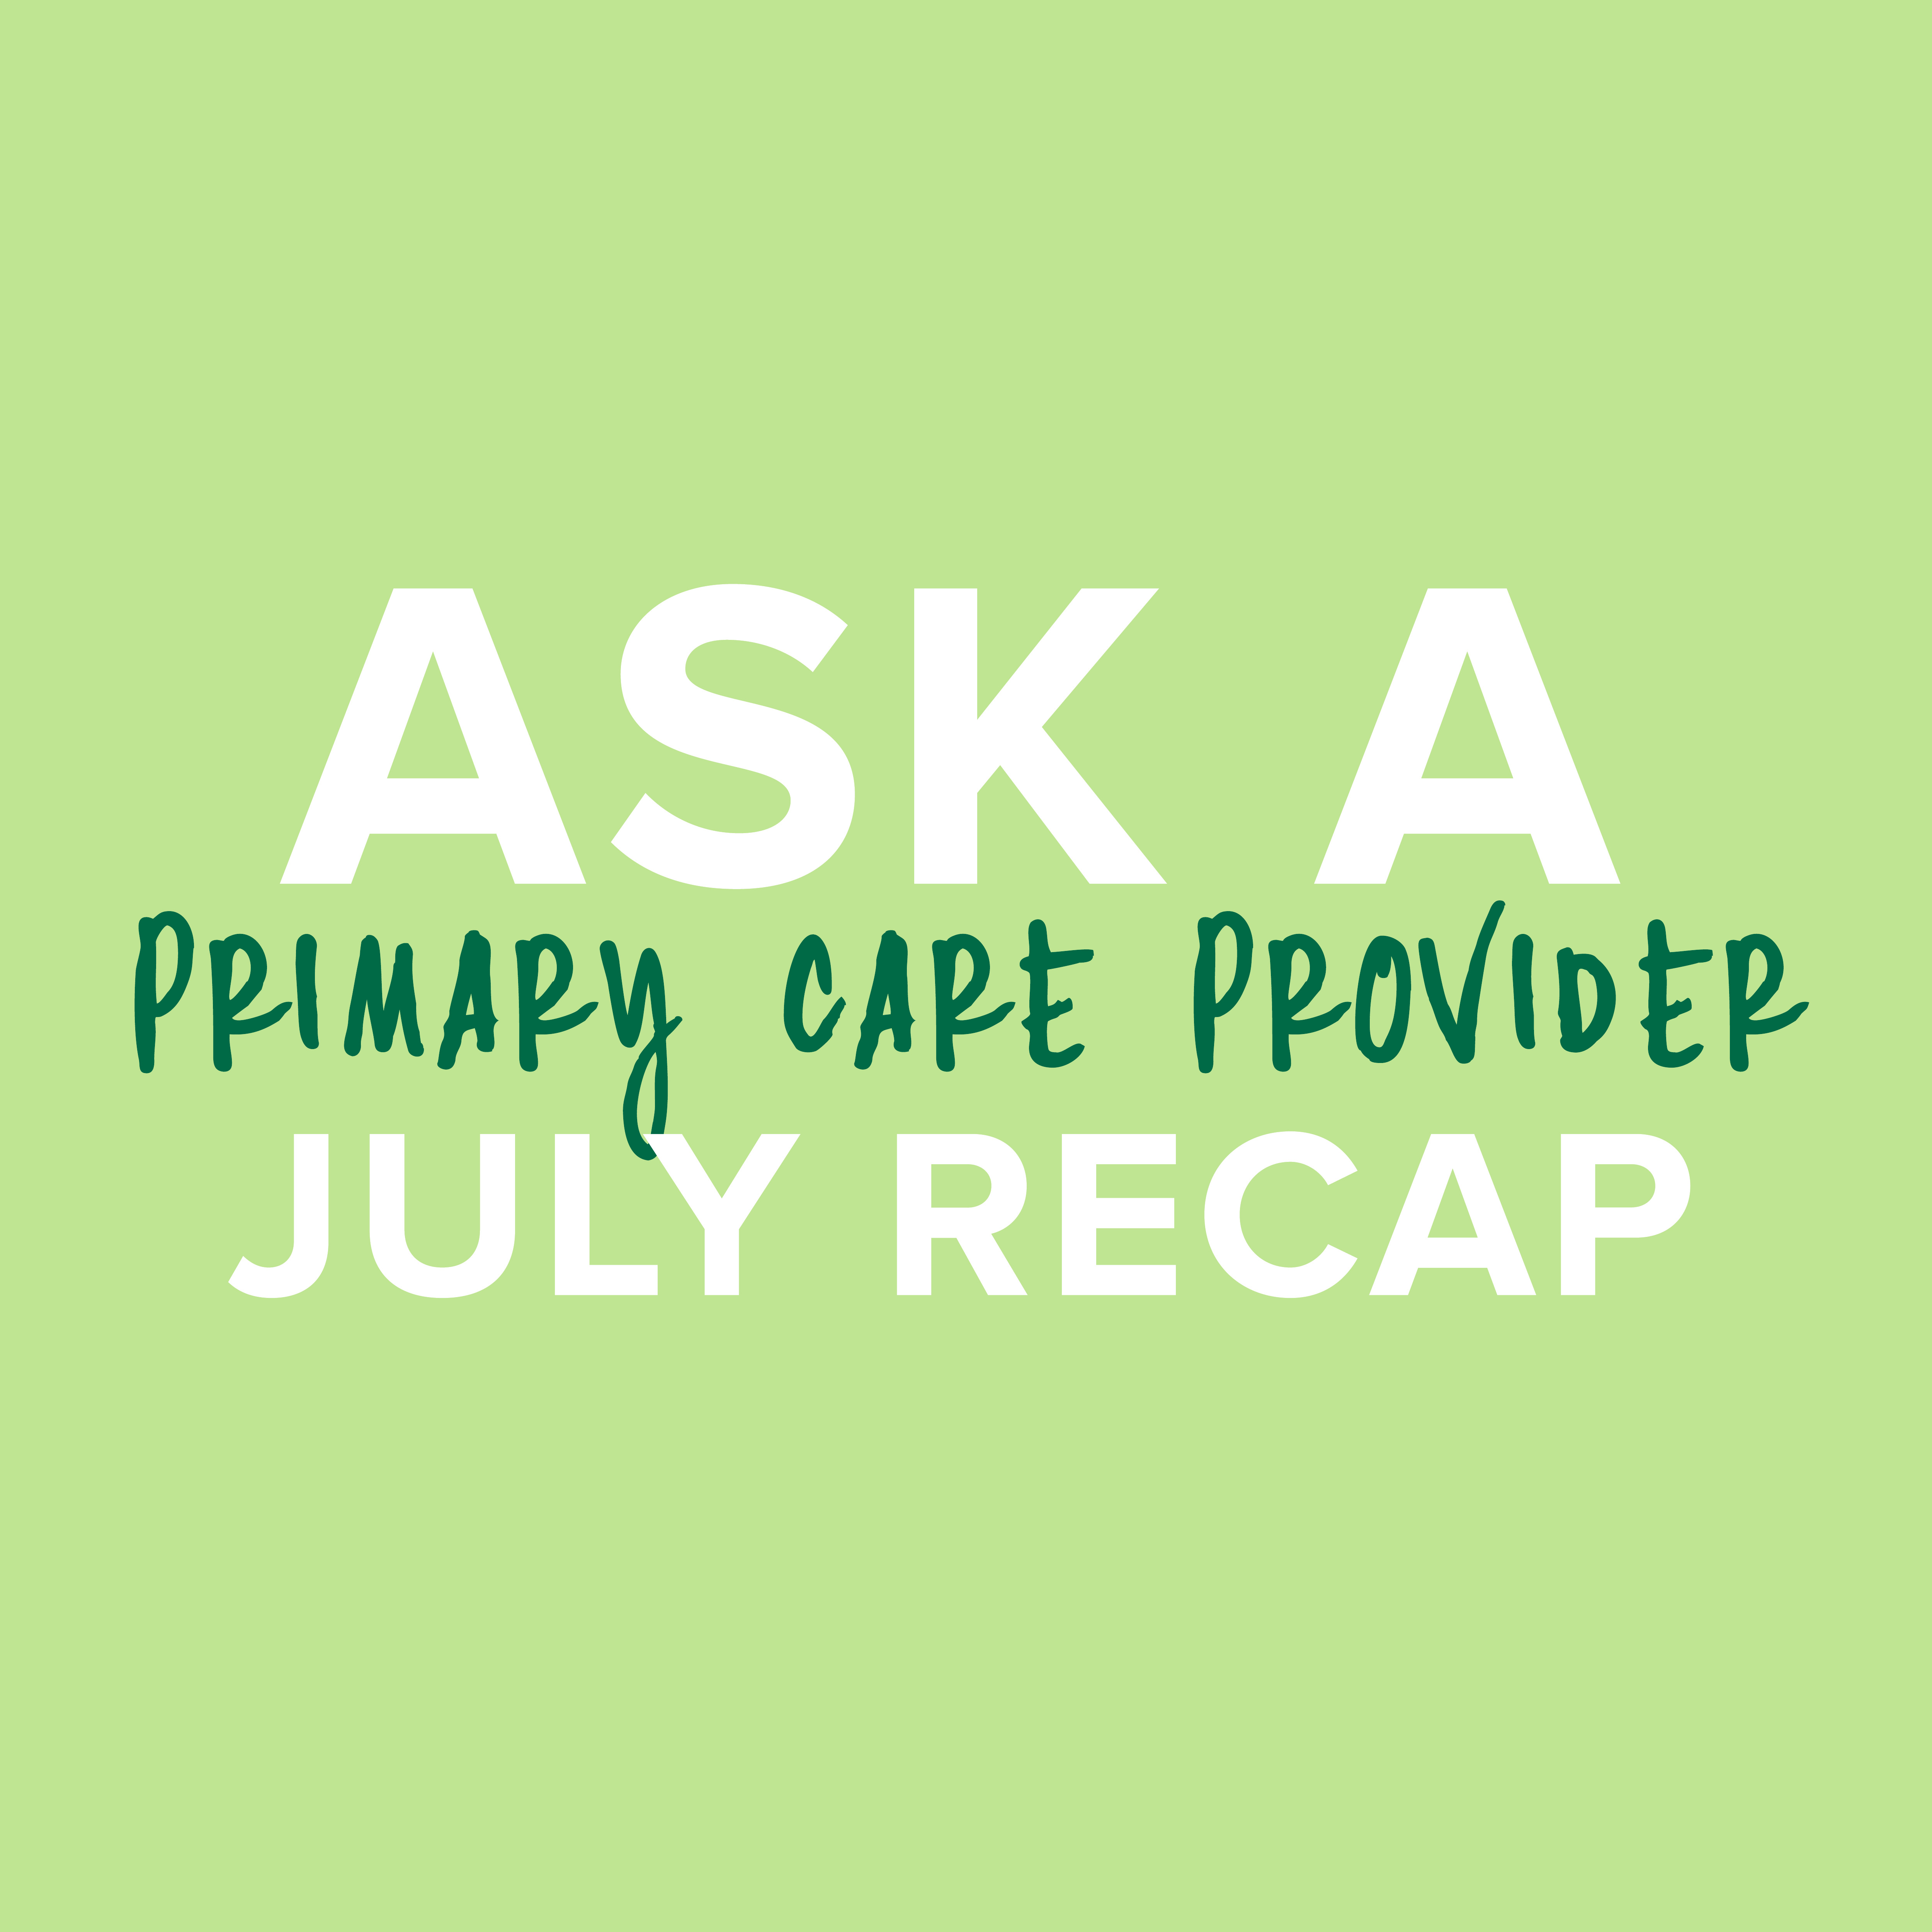 Ask a Provider July Recap